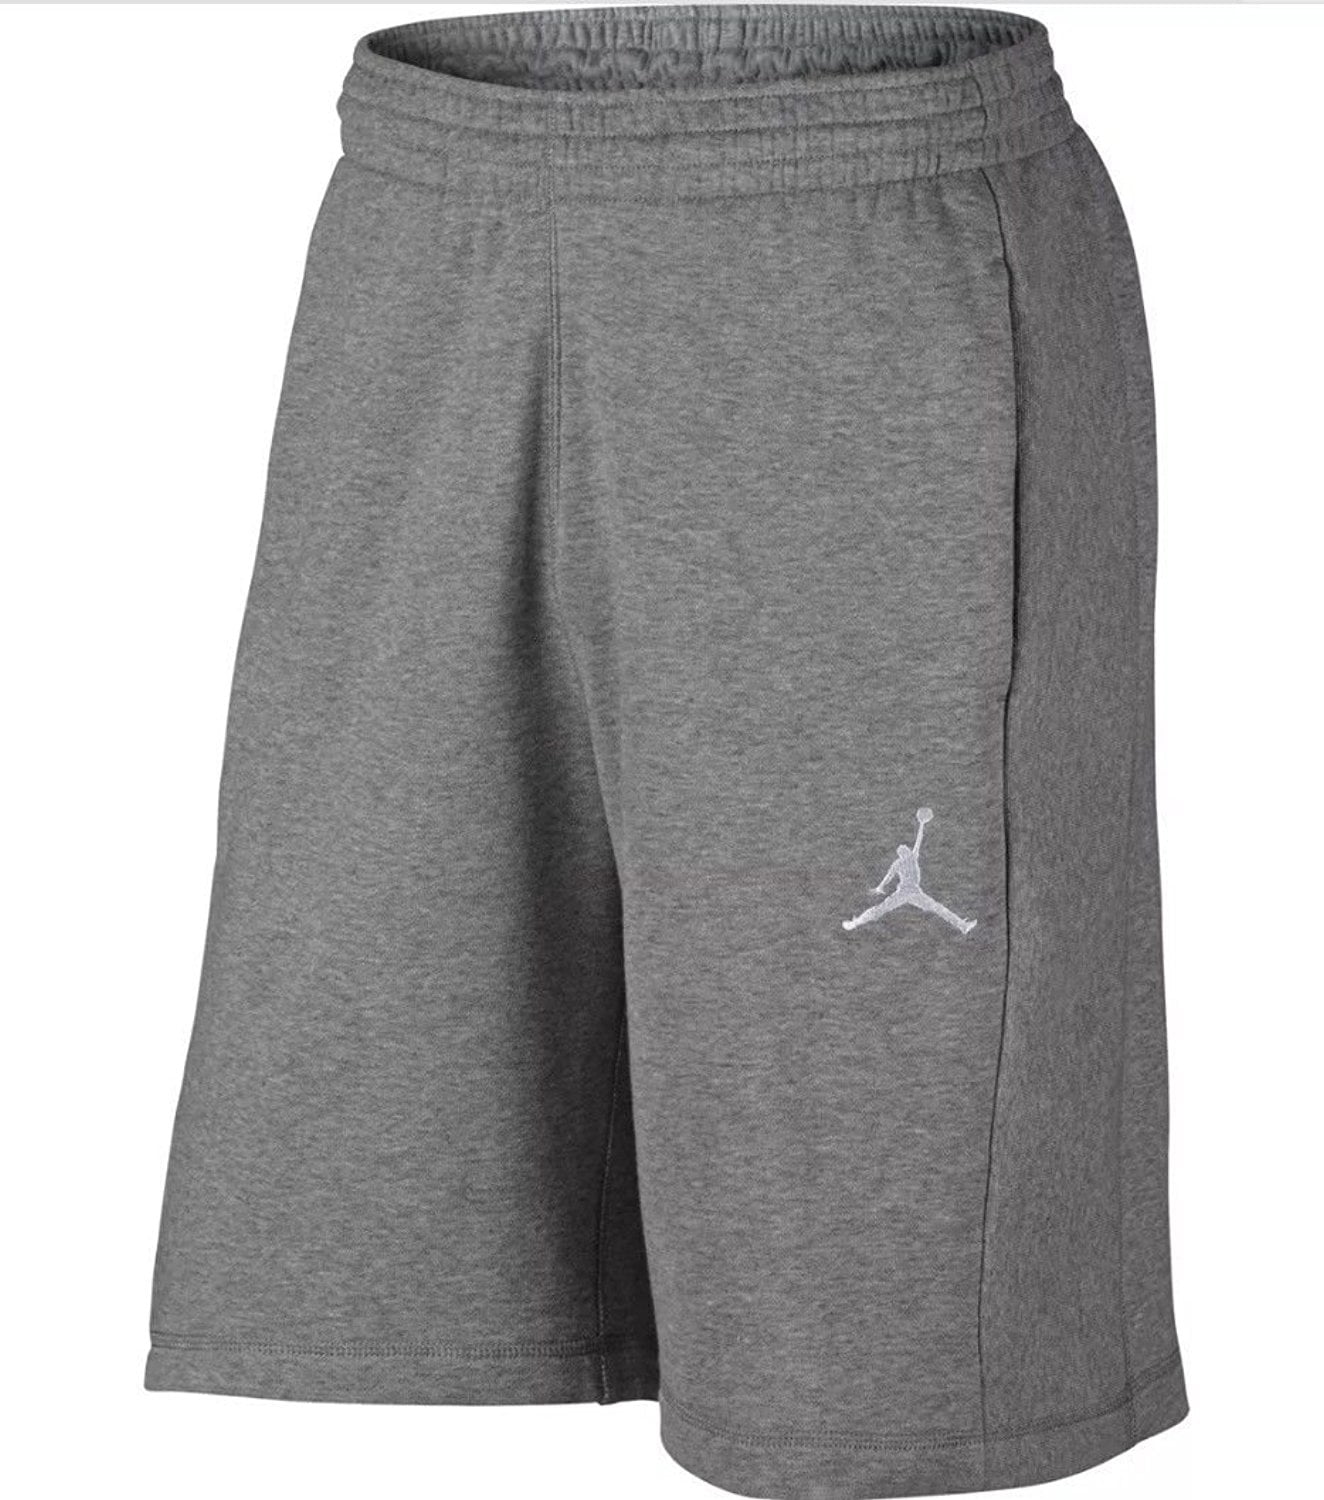 grey air jordan shorts